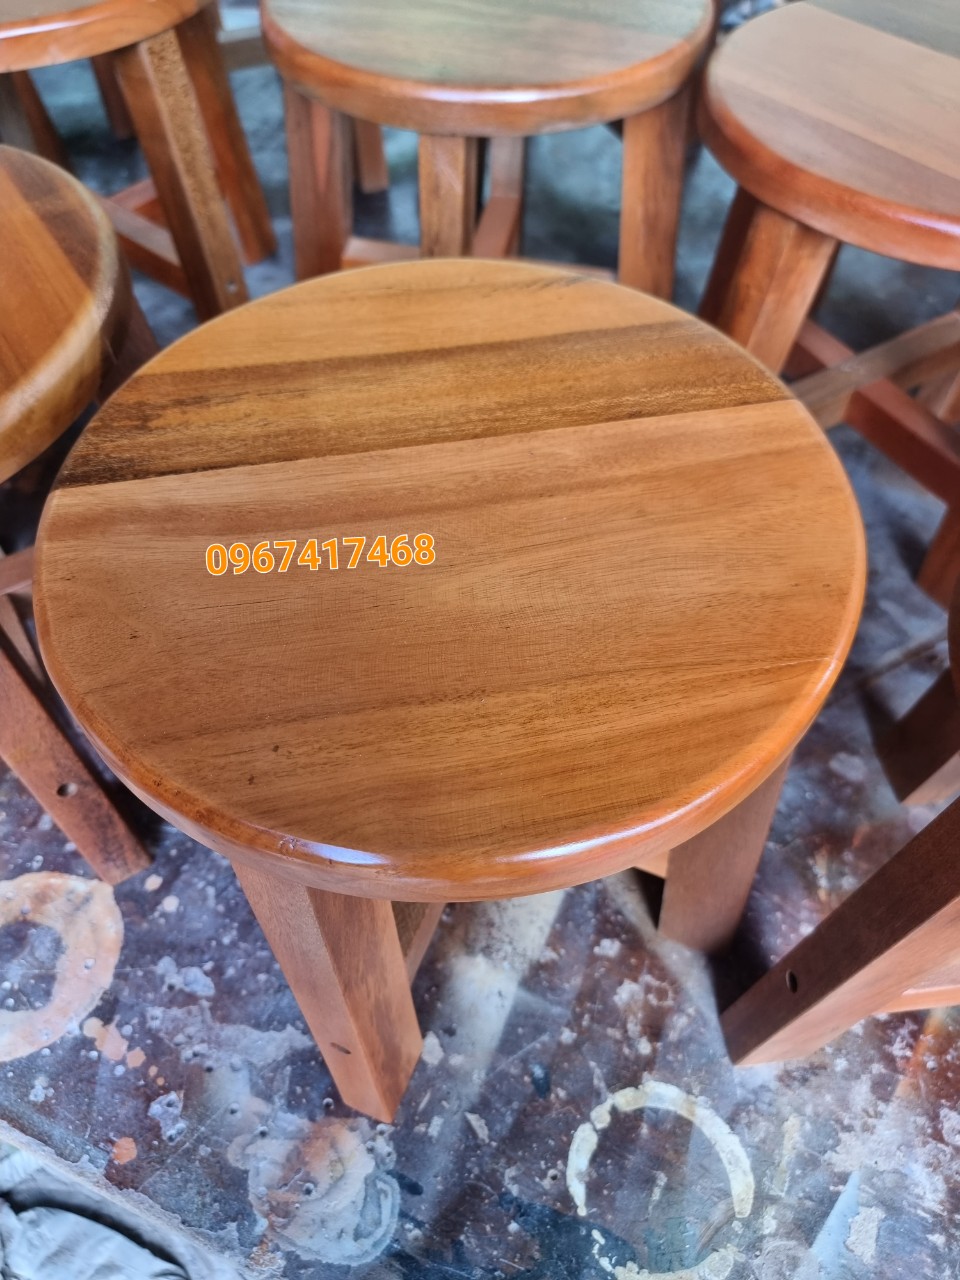 ghế cafe gỗ ghế gỗ decor nail ban công ghế gỗ quán cafe ghế gỗ quán ăn ghế gỗ tự nhiên cao cấp ( SALE GIÁ RẺ ) ghế